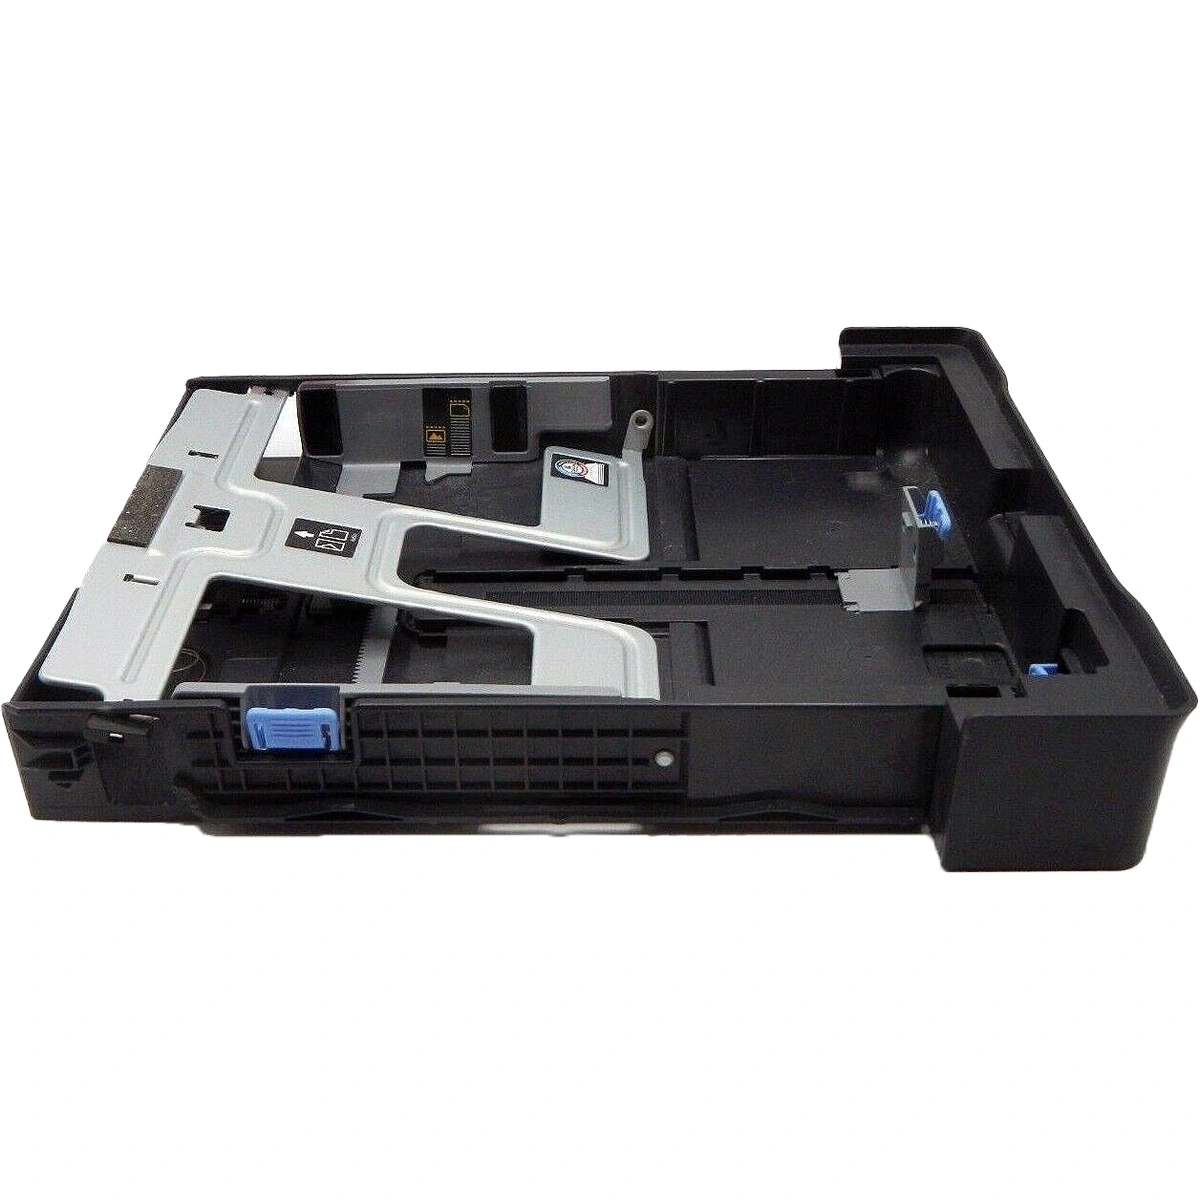 HP OfficeJet Pro 8600 Paper Tray